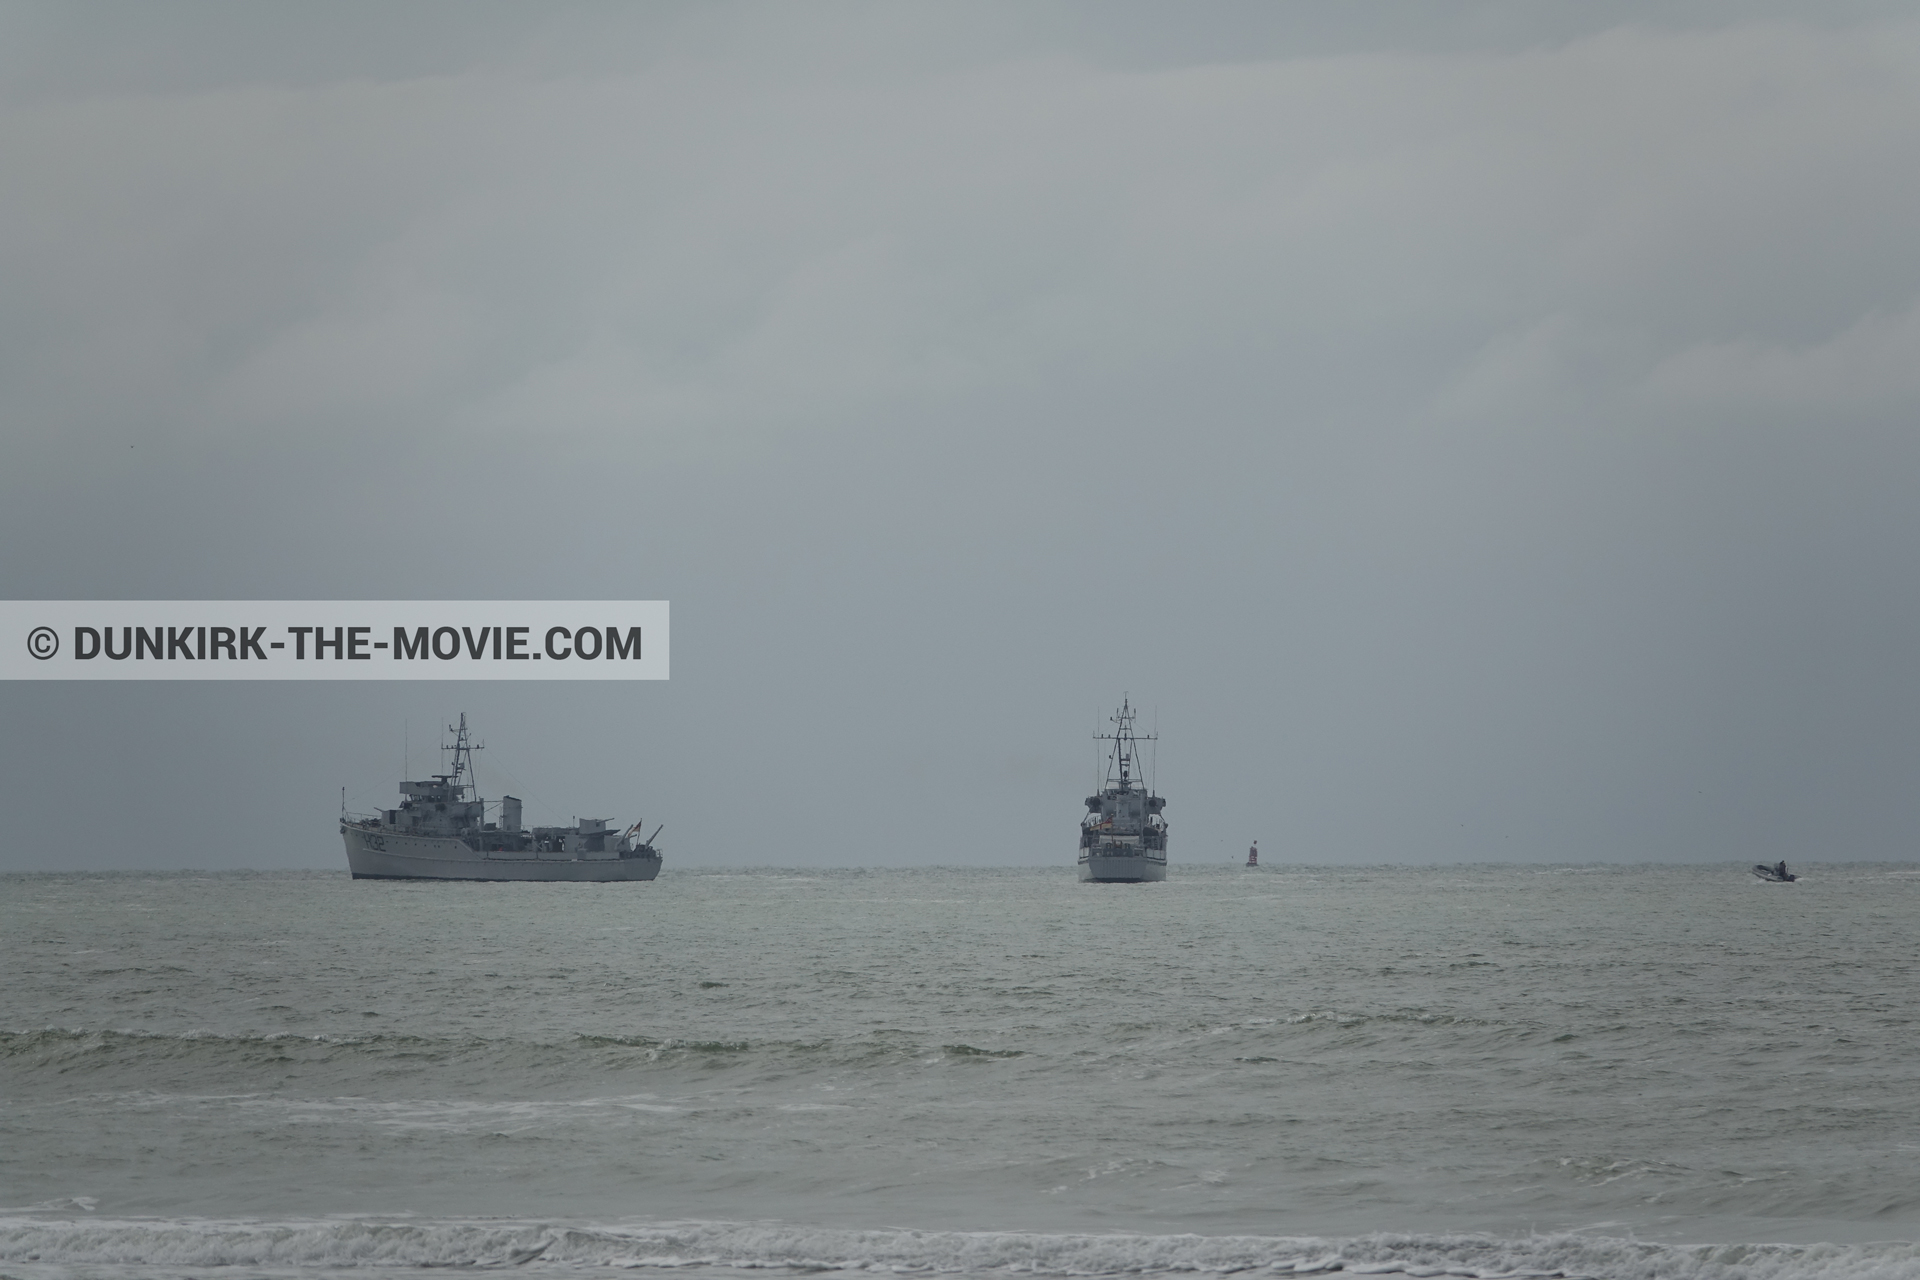 Fotos con barco, cielo gris, mares agitados,  durante el rodaje de la película Dunkerque de Nolan